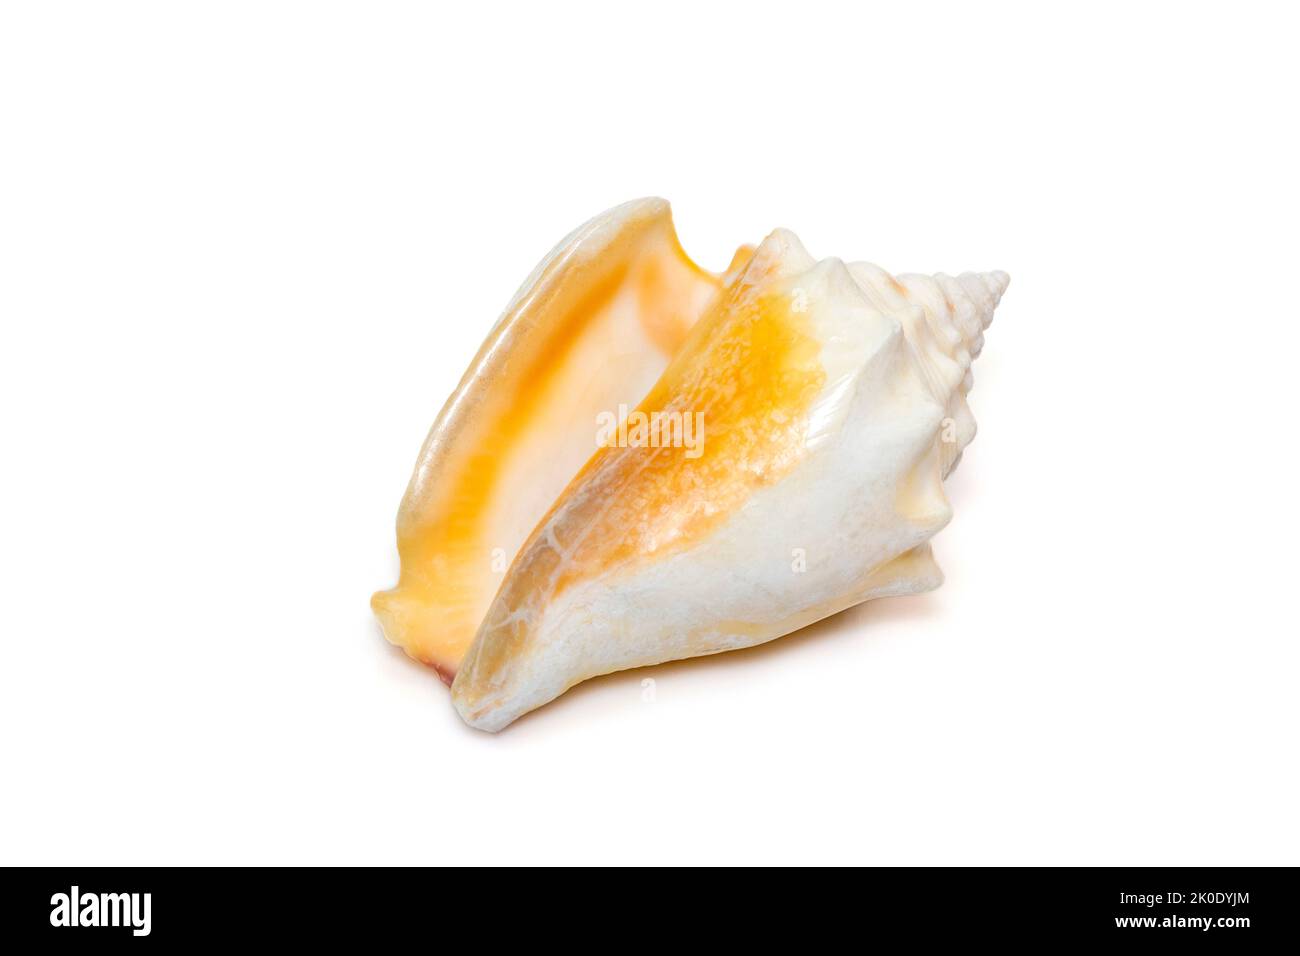 Image de la coquille marine de strombus alatus, le conch combattant de Floride, est une espèce d'escargot de mer de taille moyenne, d'eau chaude, un mollusque de gastropodes marins. Banque D'Images